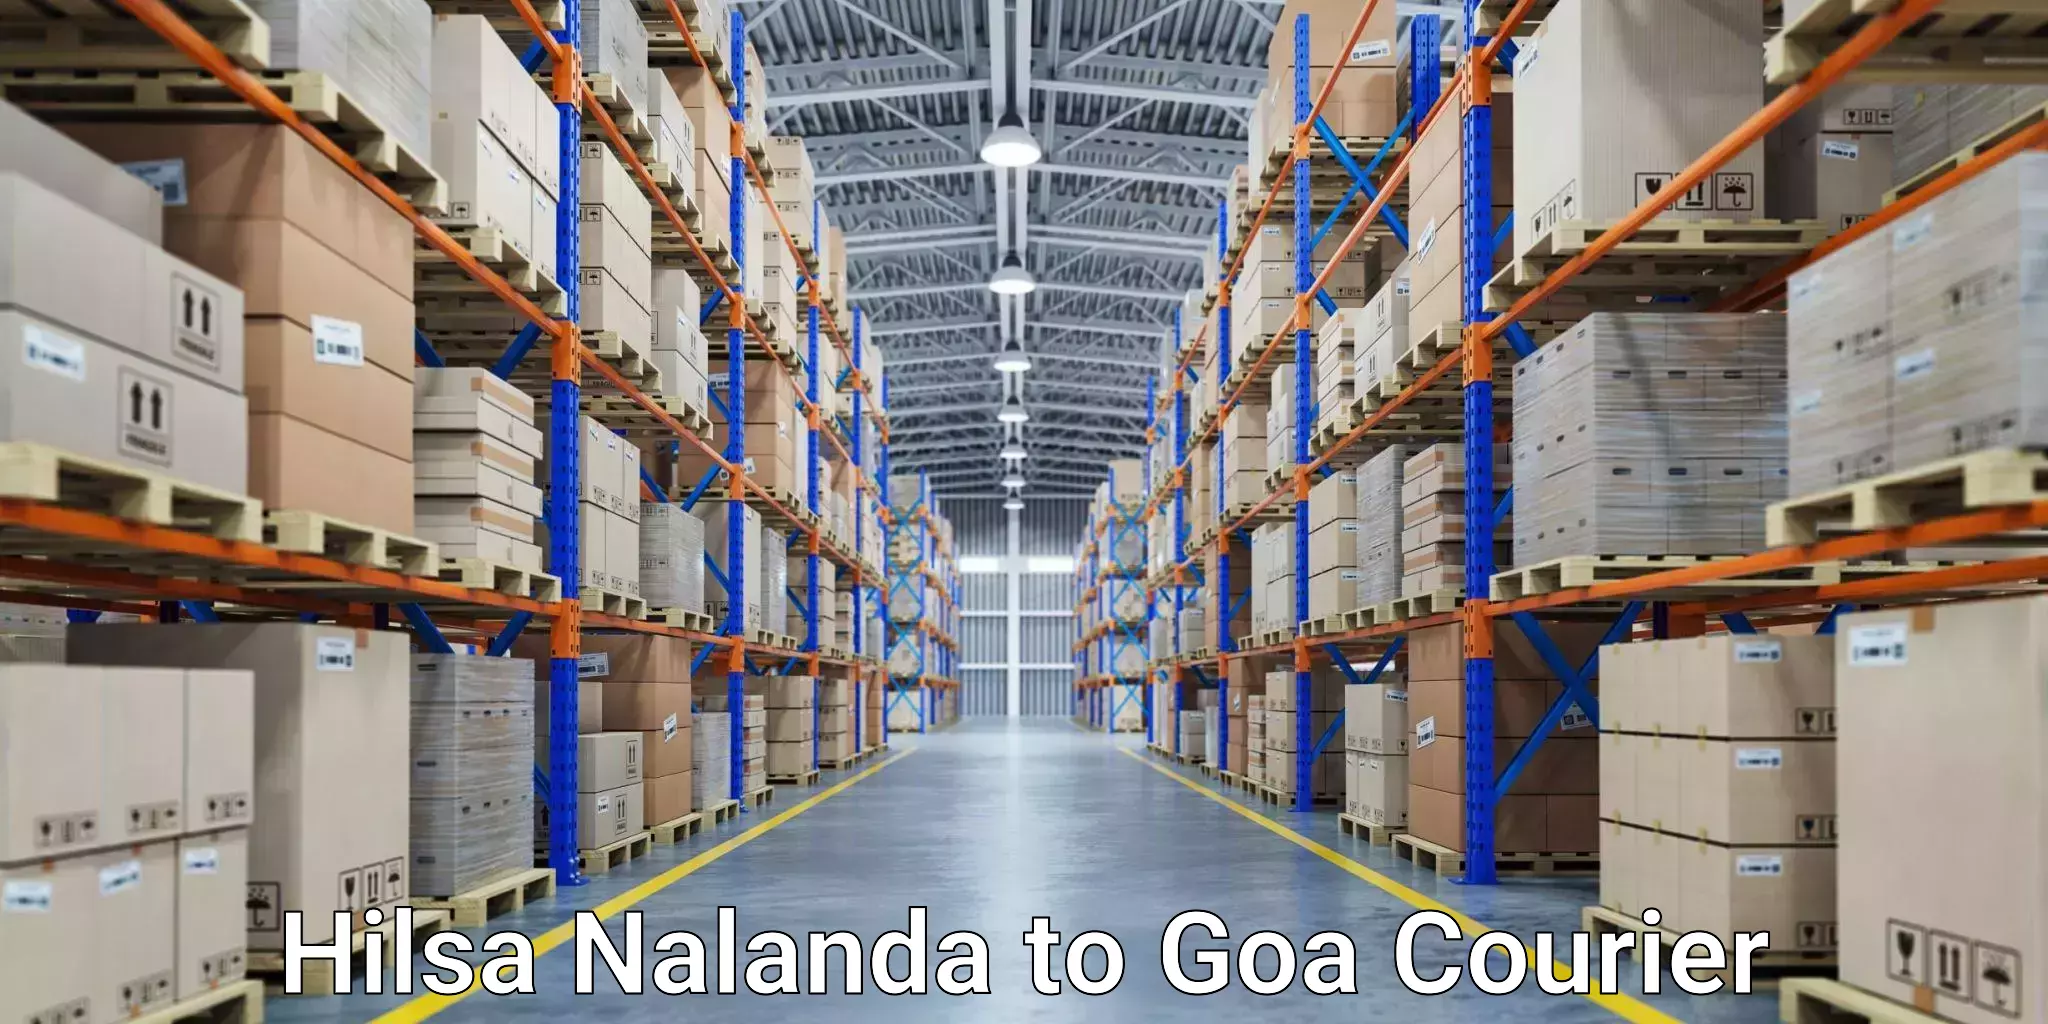 Express courier facilities Hilsa Nalanda to Vasco da Gama